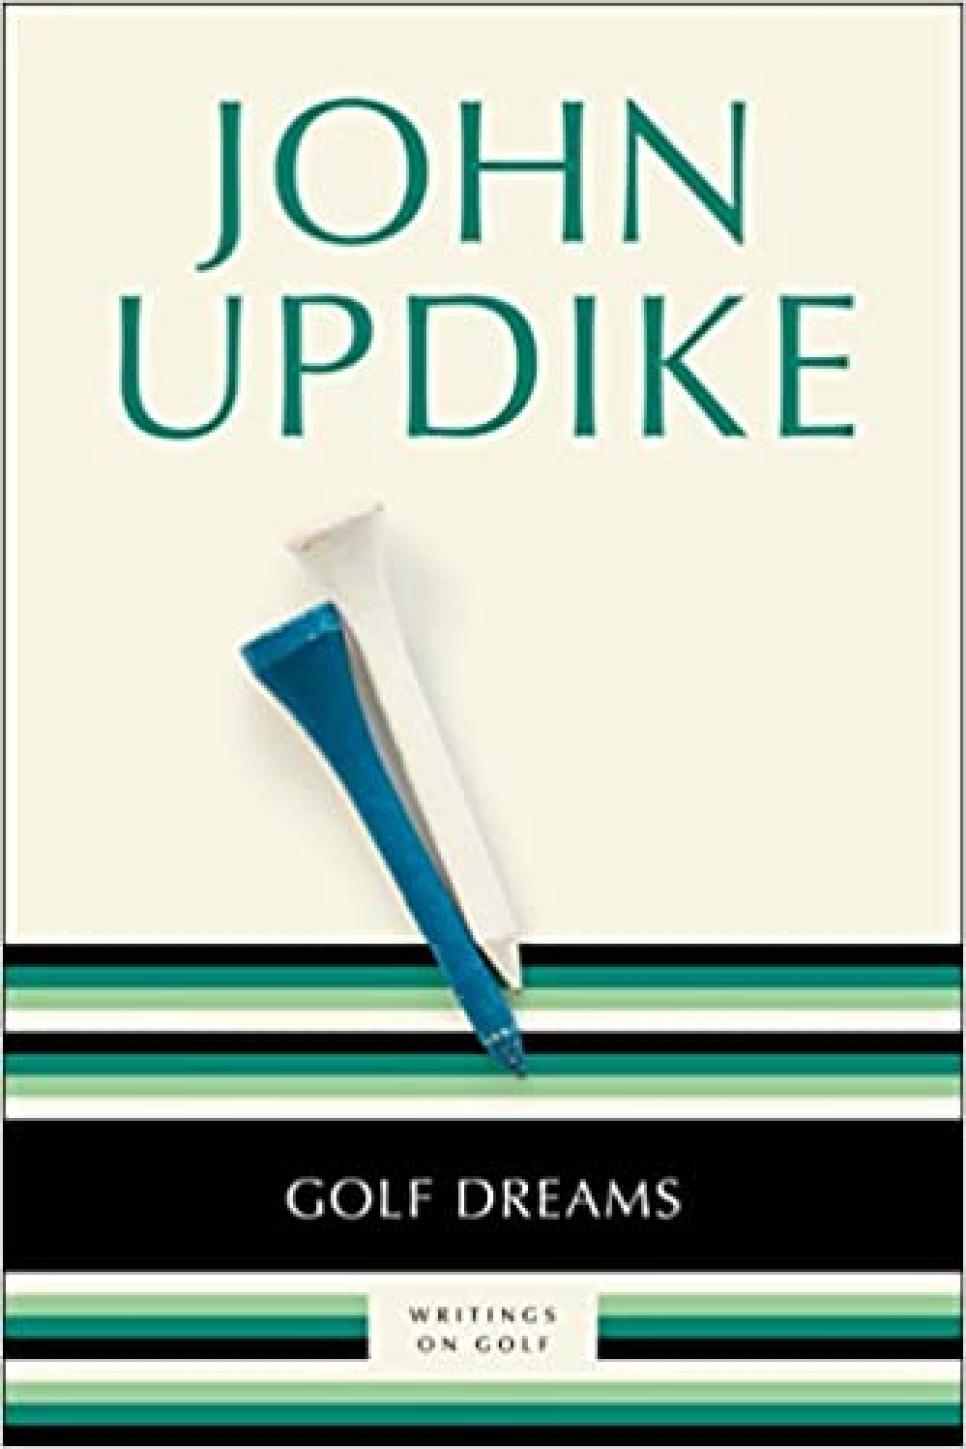 rx-amazongolf-dreams-writings-on-golf-by-john-updike-1996.jpeg